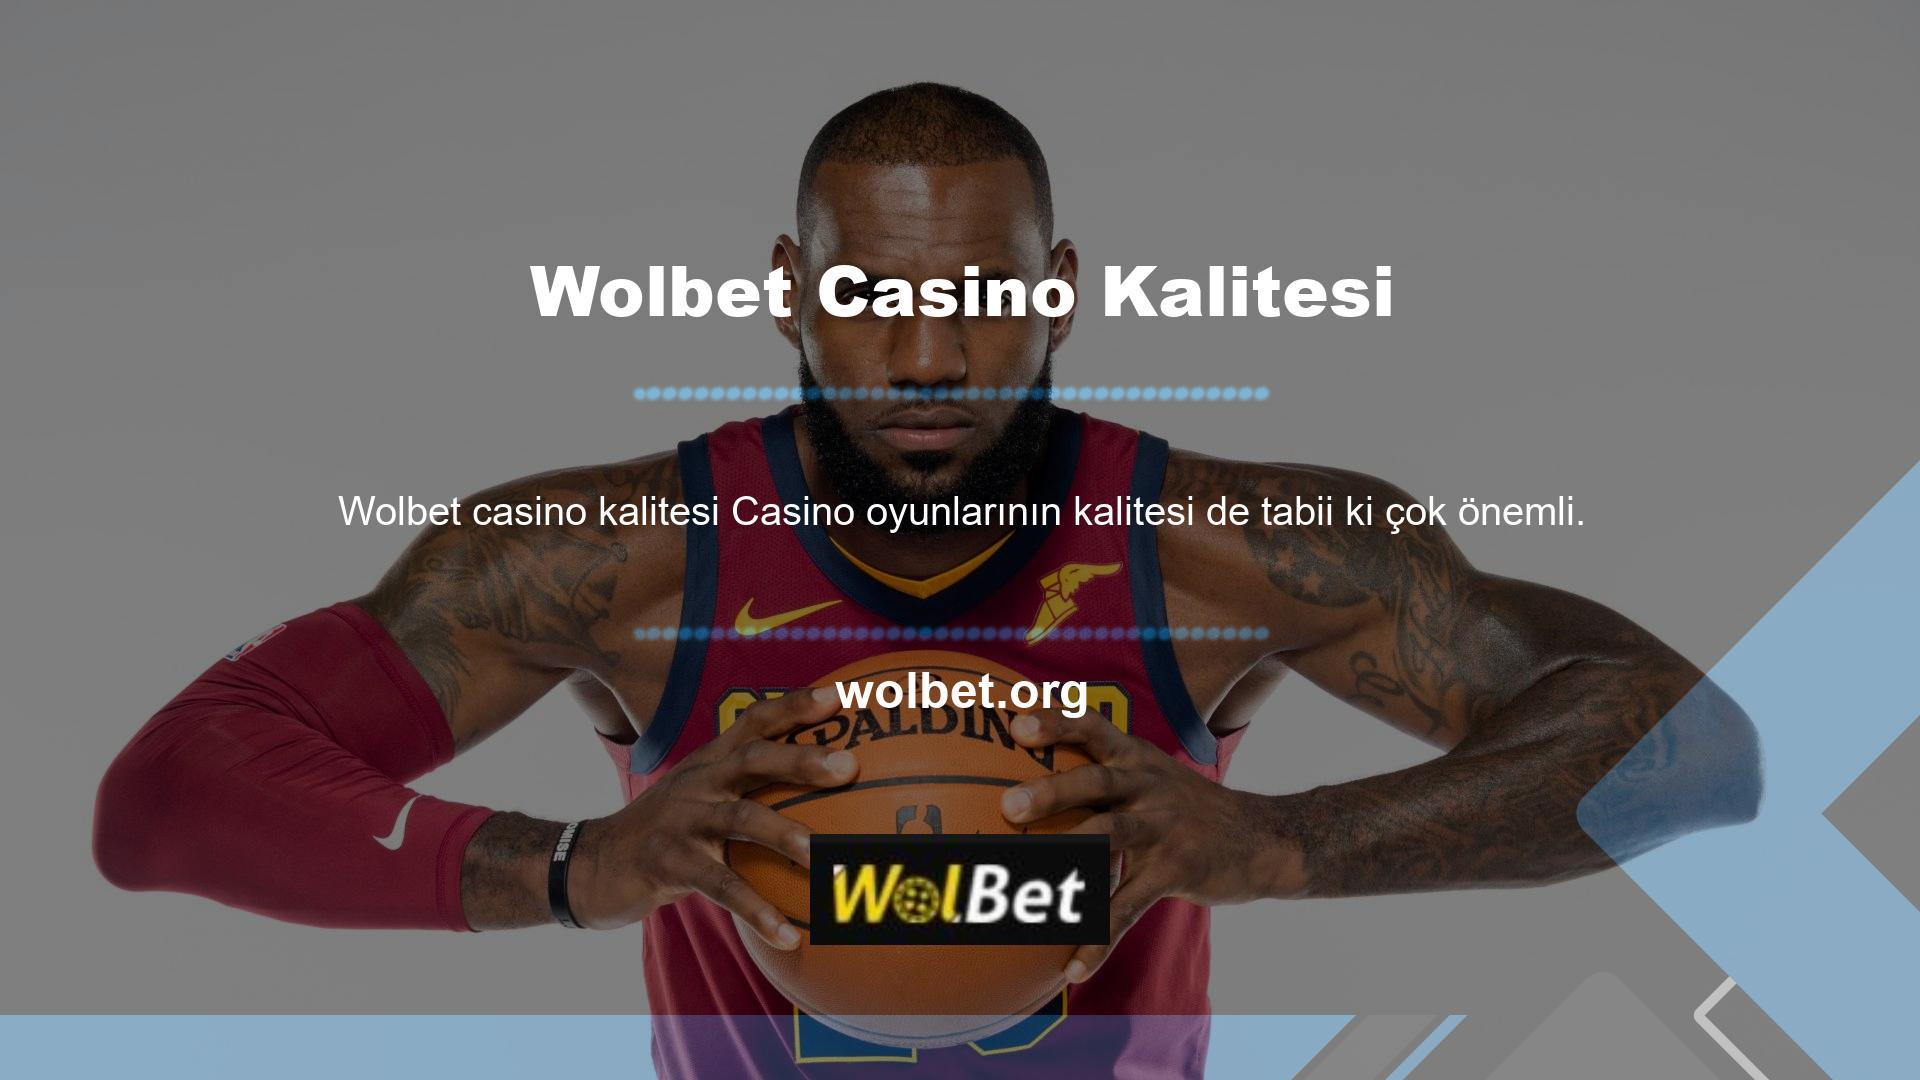 Bu Wolbet Casino Kalitesi seçeneklerinin kalitesine bakıldığında Wolbet Casino kalitesinin iyi olduğu şeklinde yorumlanabilir